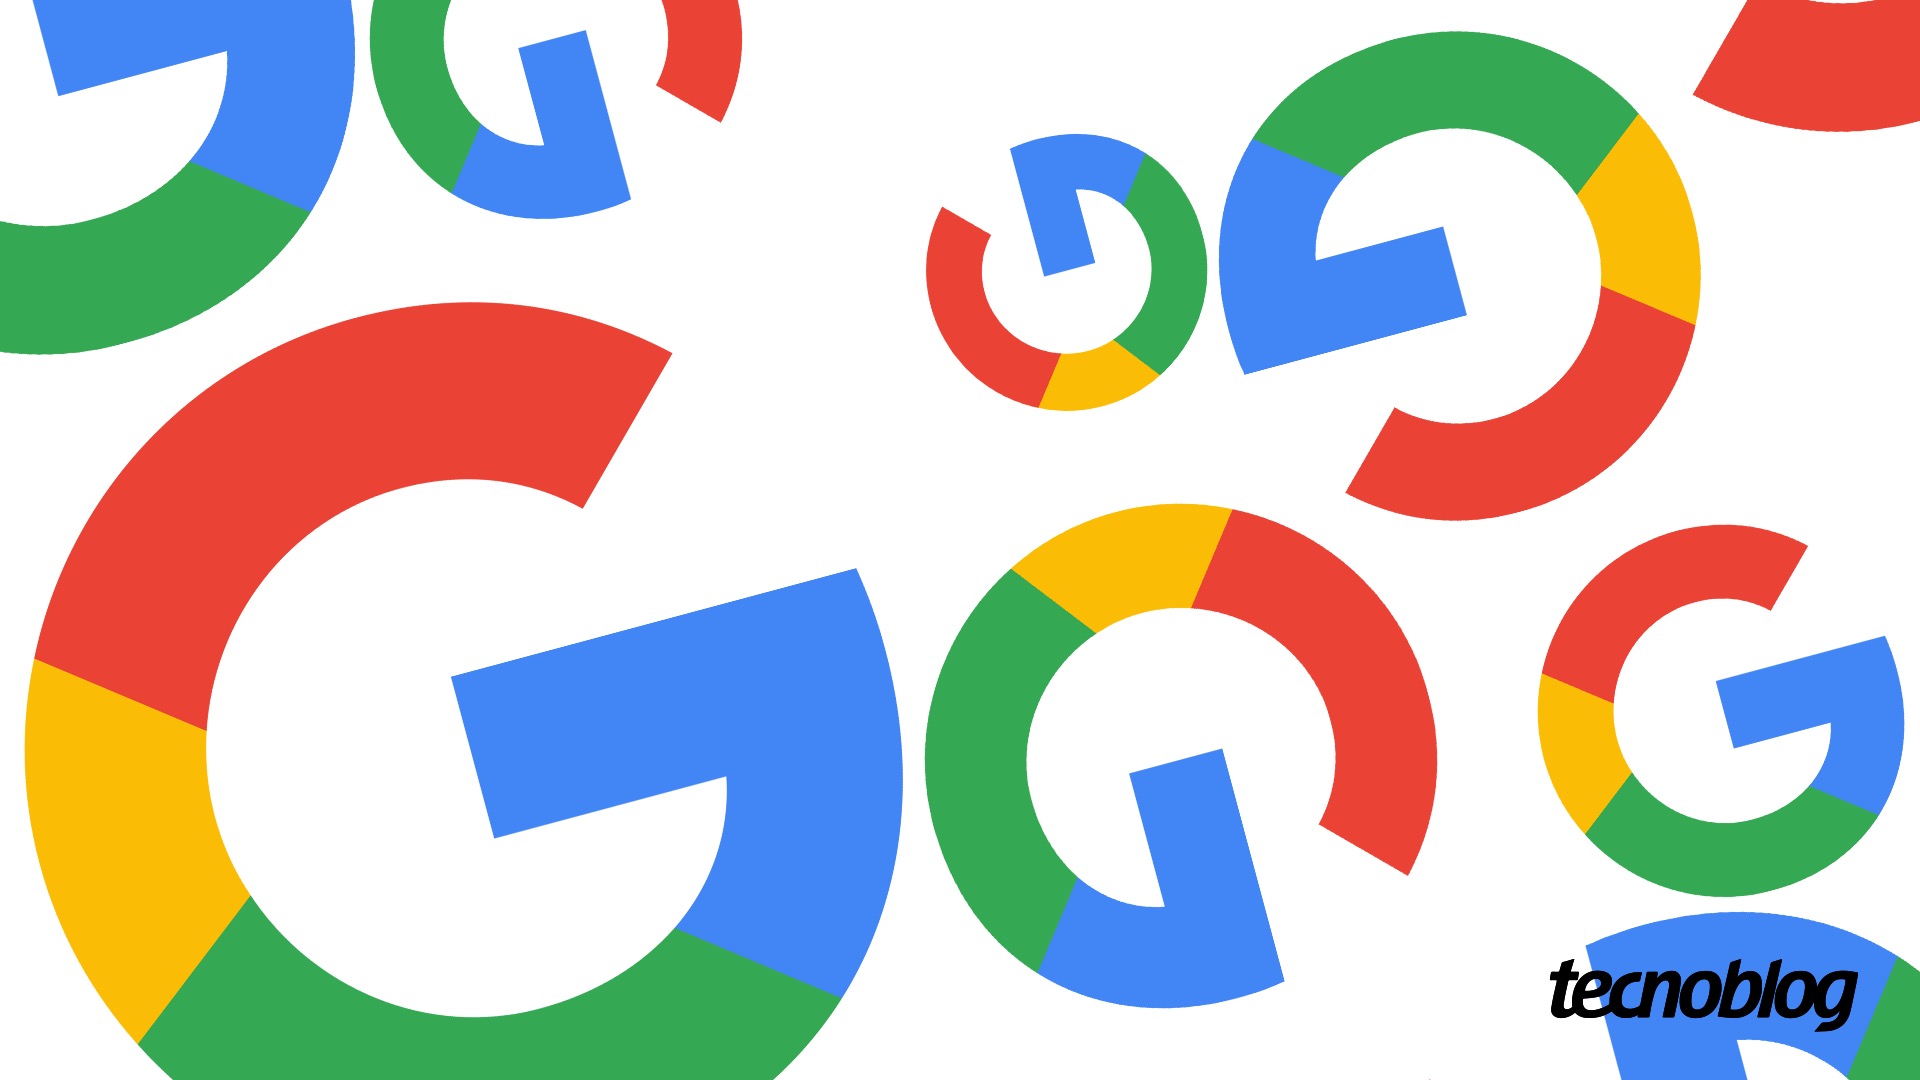 Google sofre ataque logo no começo do ano - Hoje no TecMundo 